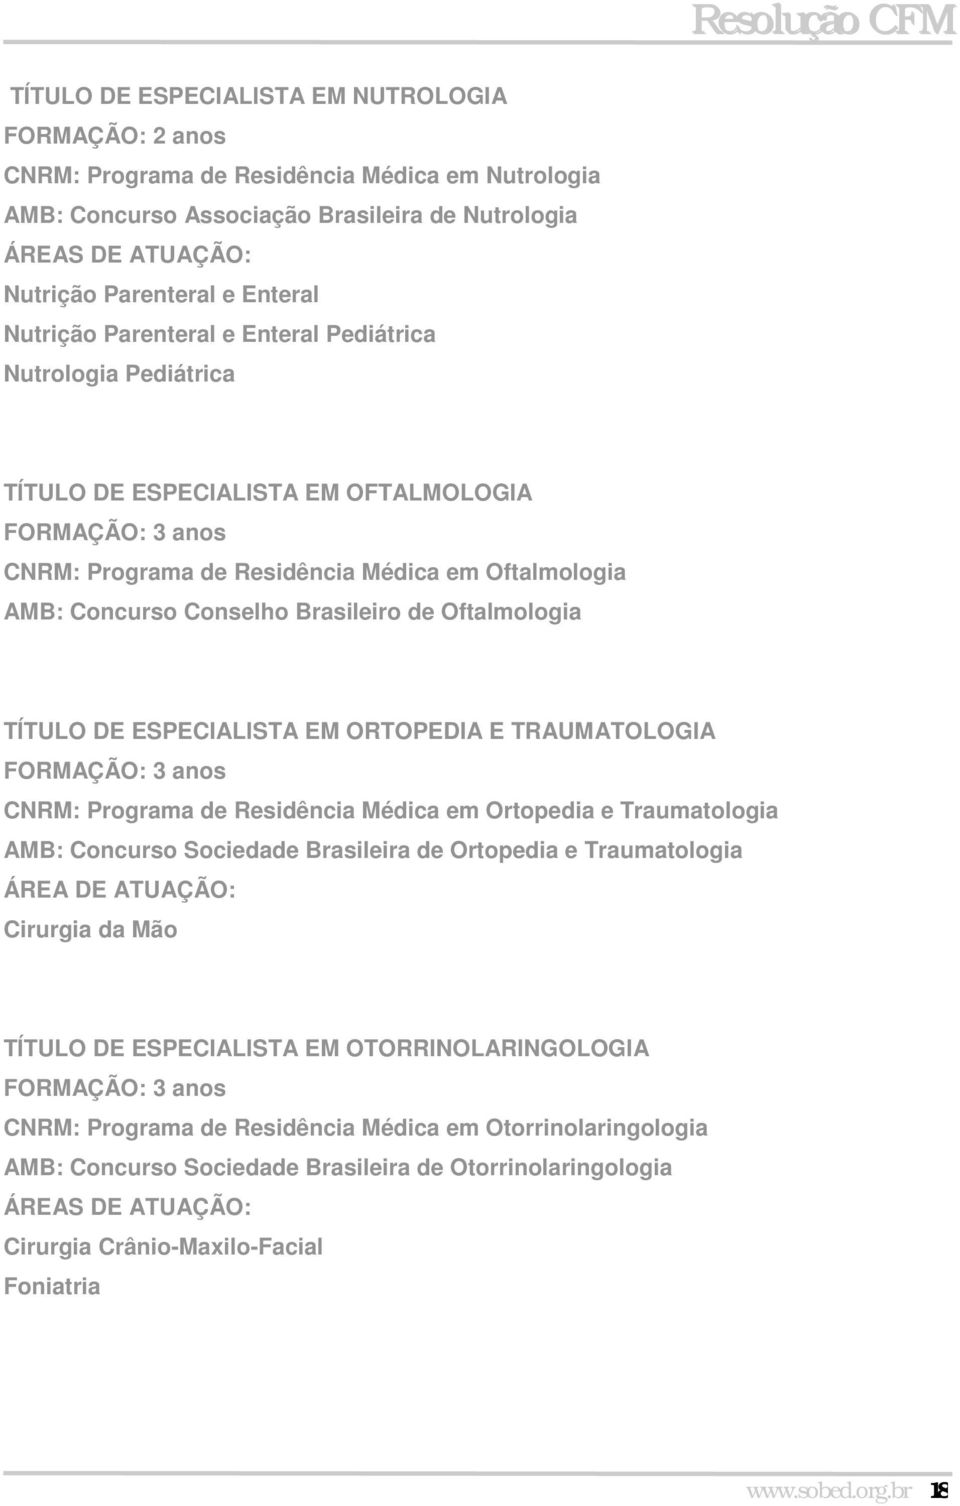 ESPECIALISTA EM ORTOPEDIA E TRAUMATOLOGIA FORMAÇÃO: 3 anos Programa de Residência Médica em Ortopedia e Traumatologia AMB: Concurso Sociedade Brasileira de Ortopedia e Traumatologia ÁREA DE ATUAÇÃO: